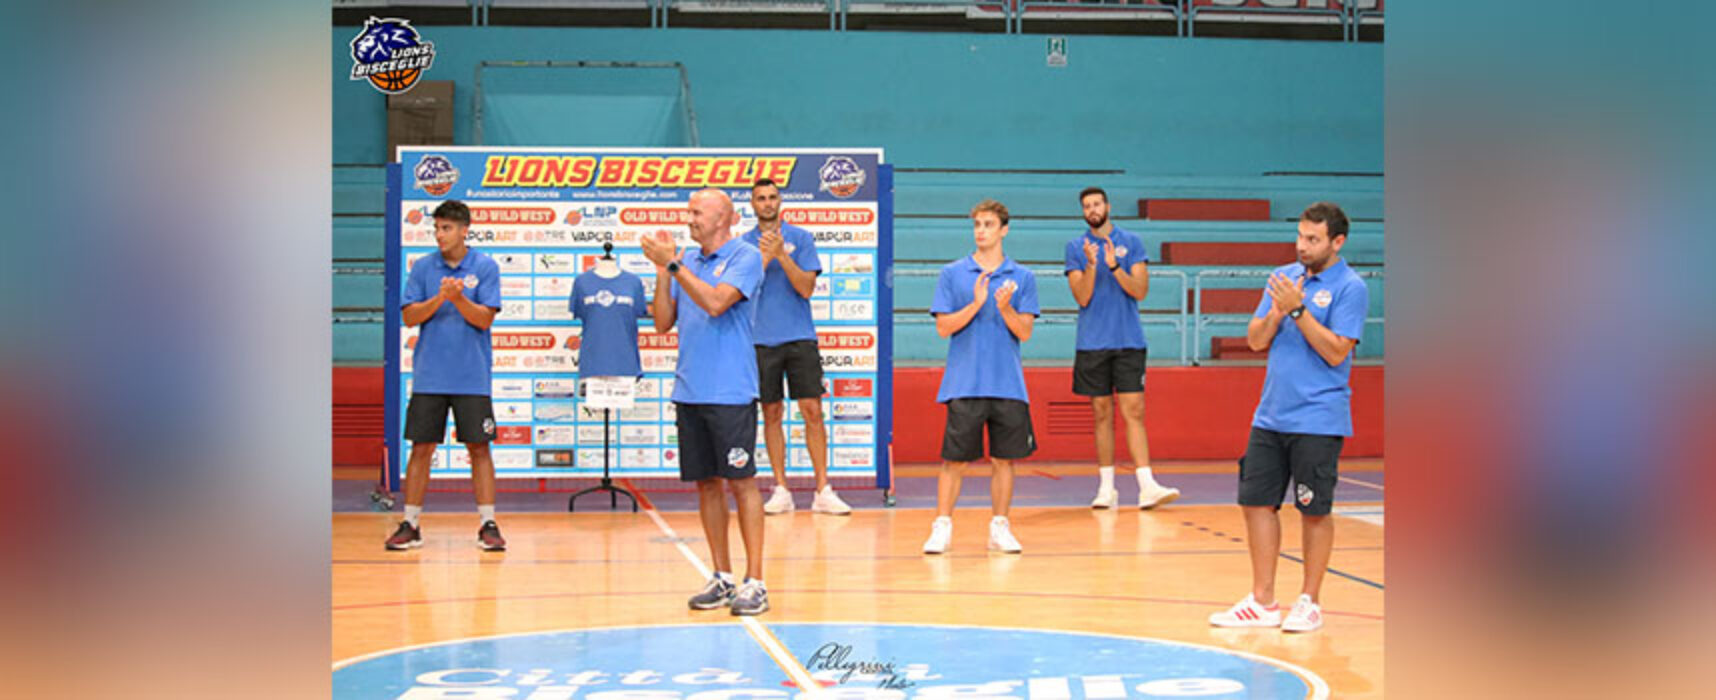 Serie B basket, Lions Bisceglie a caccia della seconda vittoria consecutiva